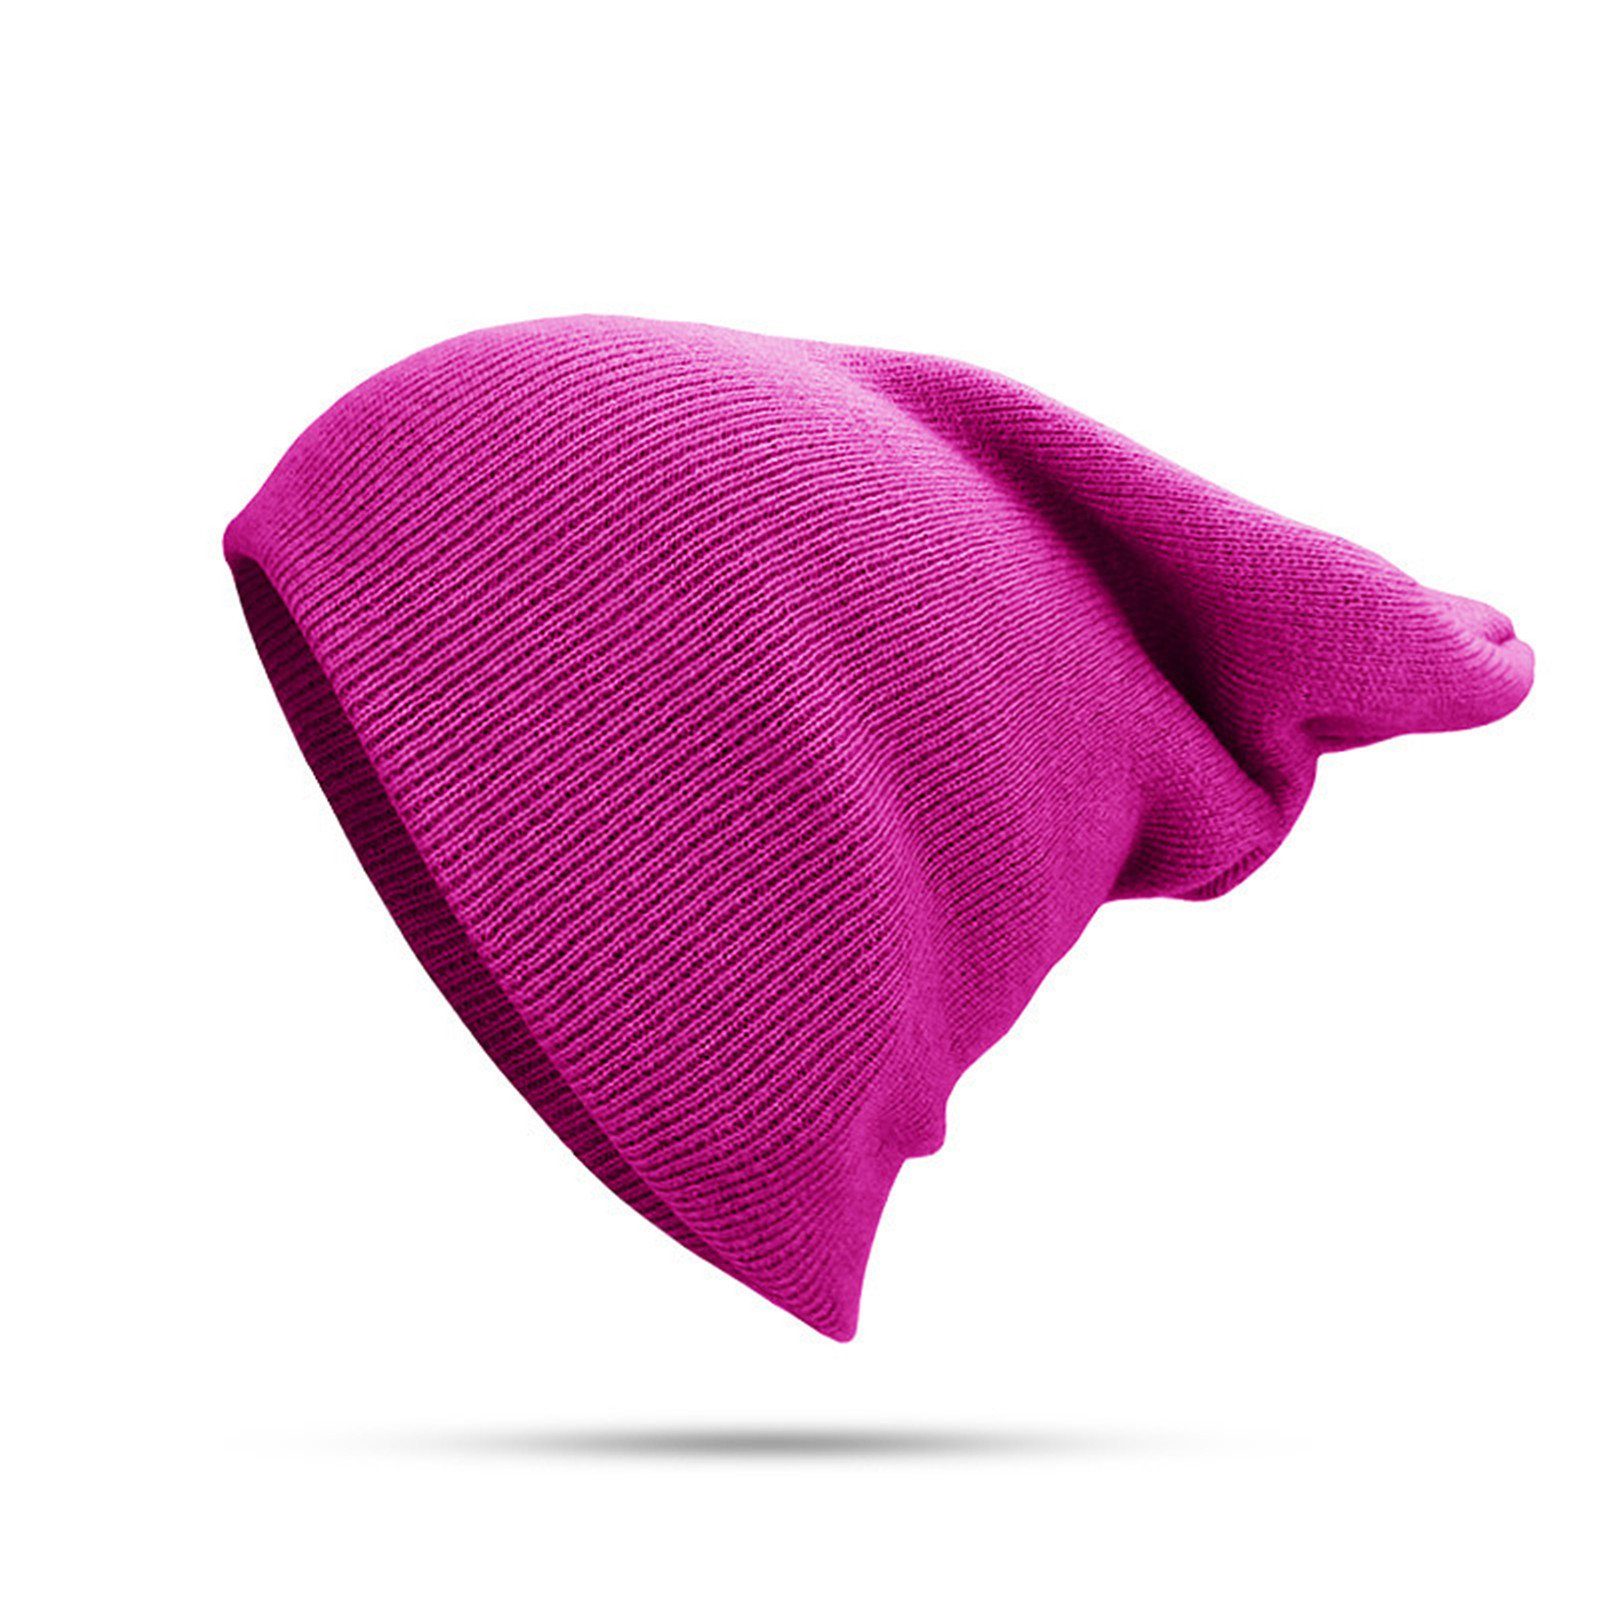 Blusmart Strickmütze Mütze Für Damen Einfarbig, rosarot Und Warm Unisex, Bündchen, Herren, Mit